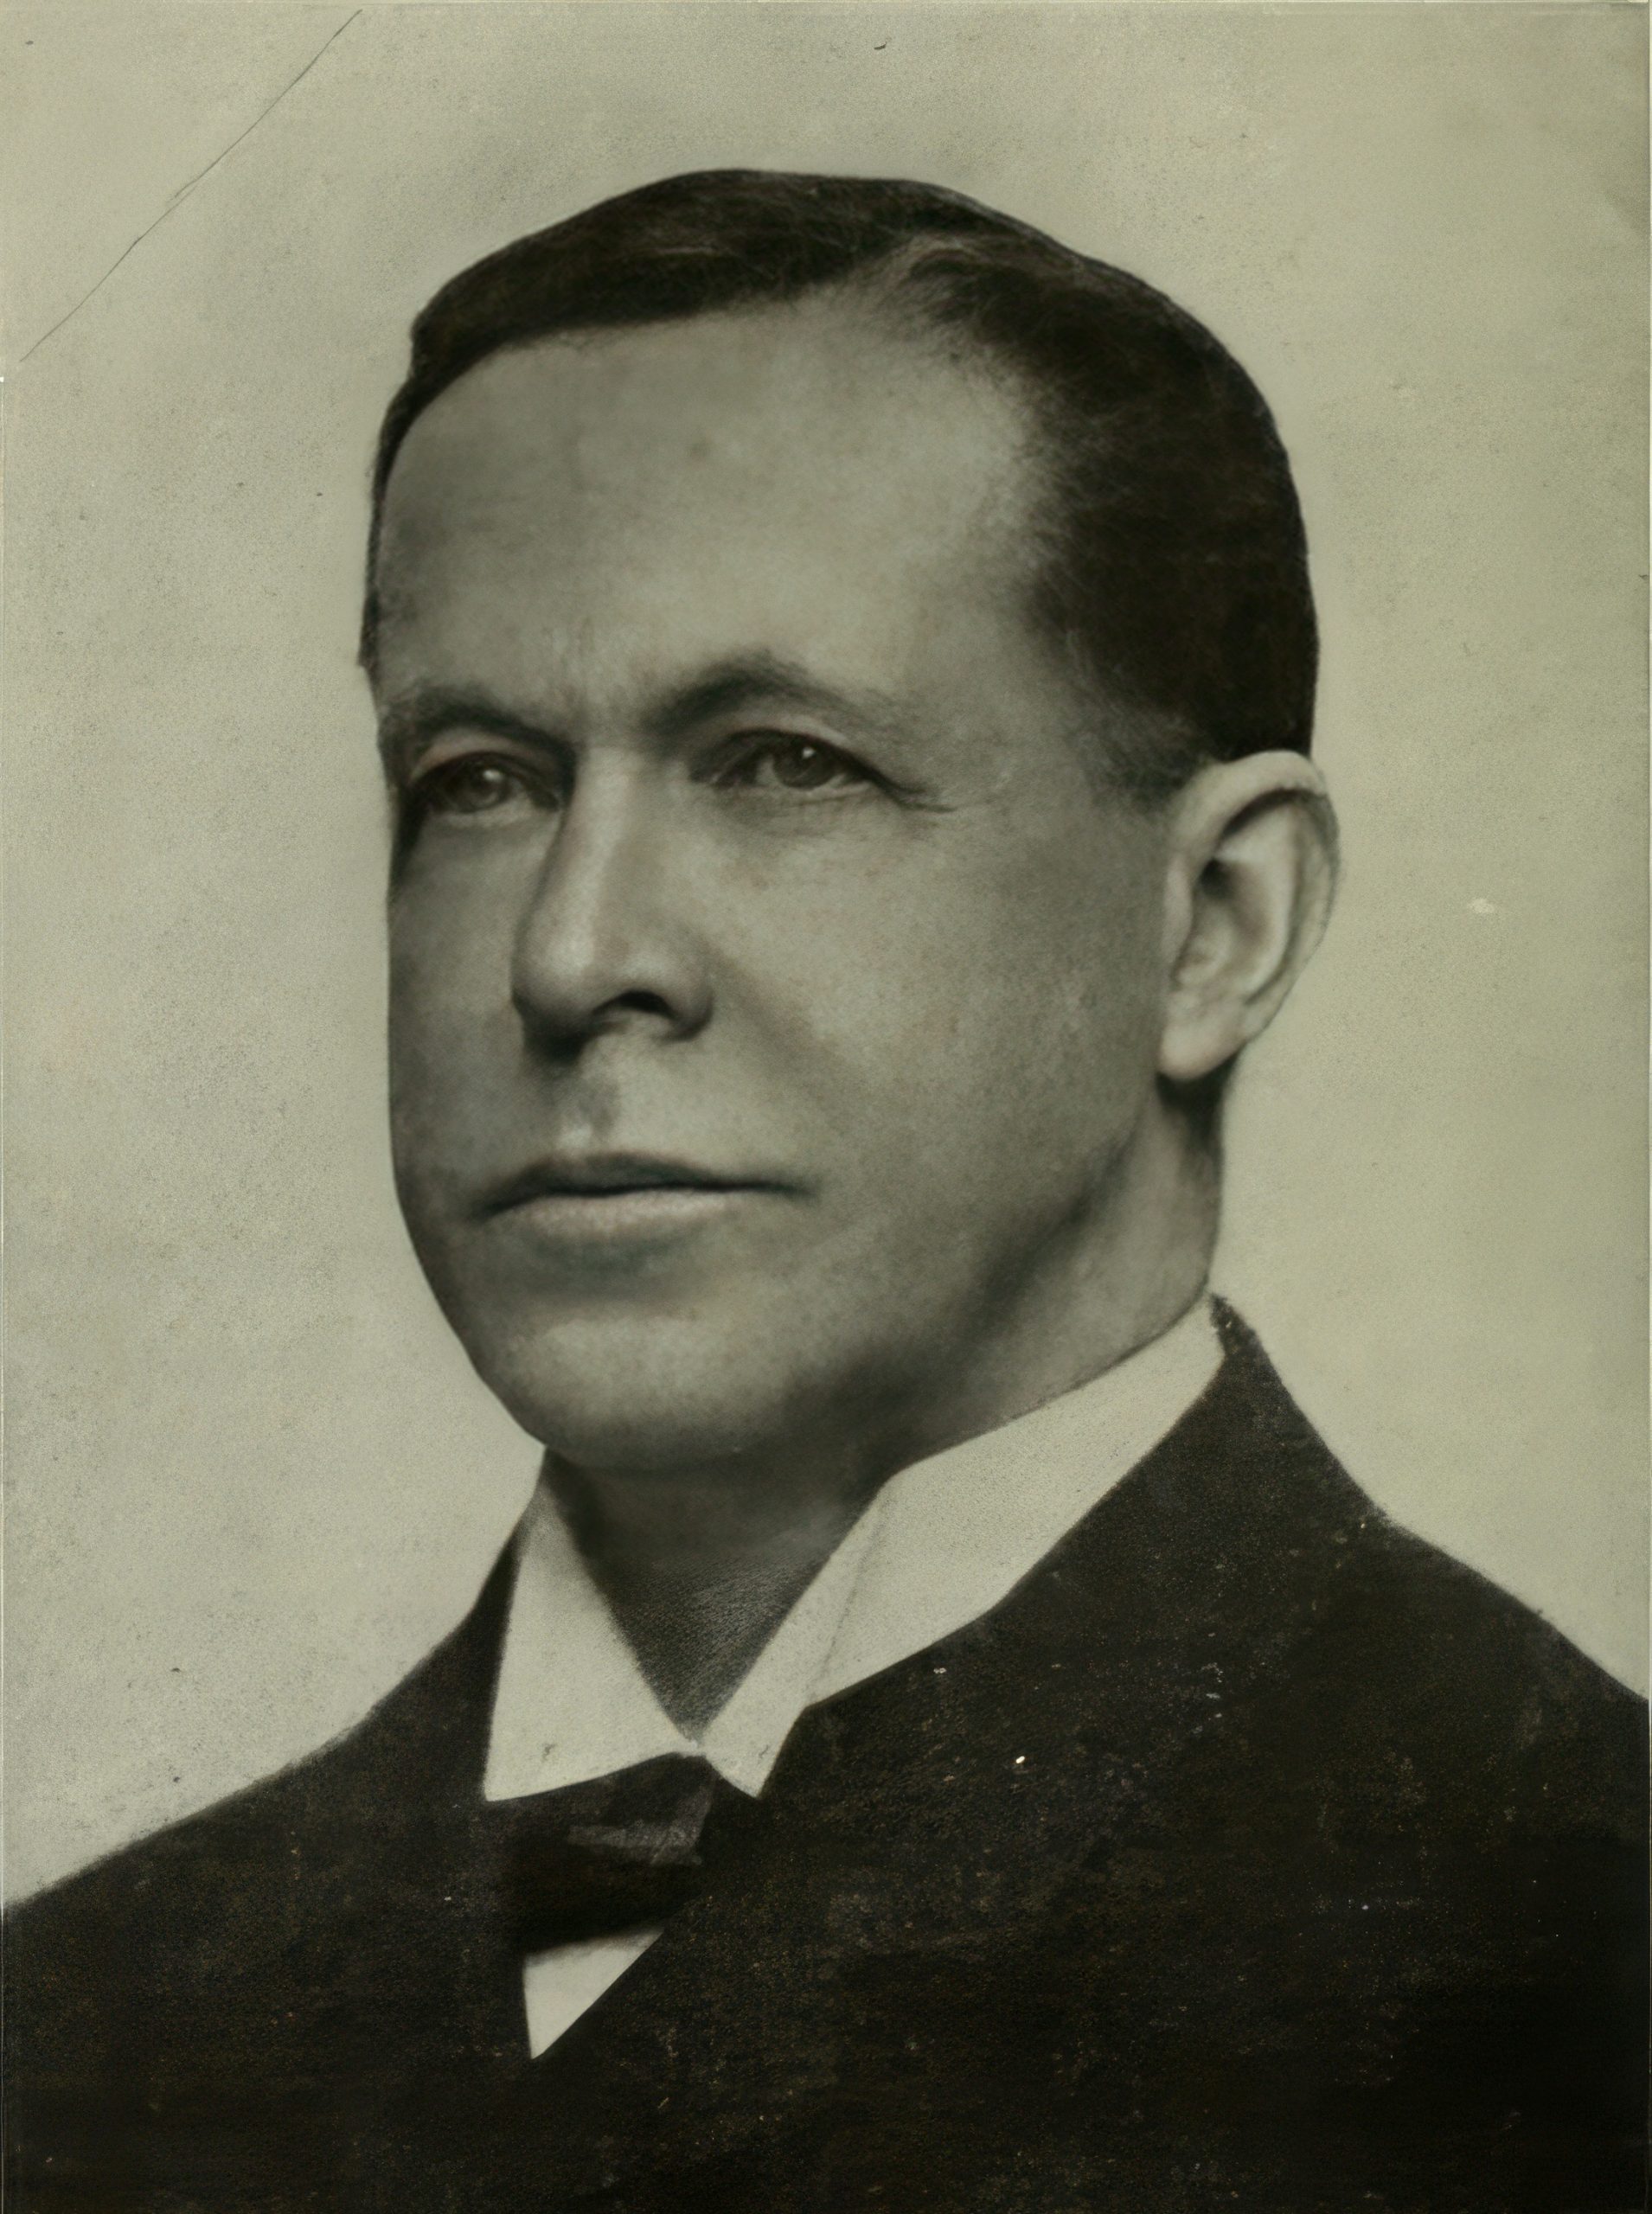 David M. Parry